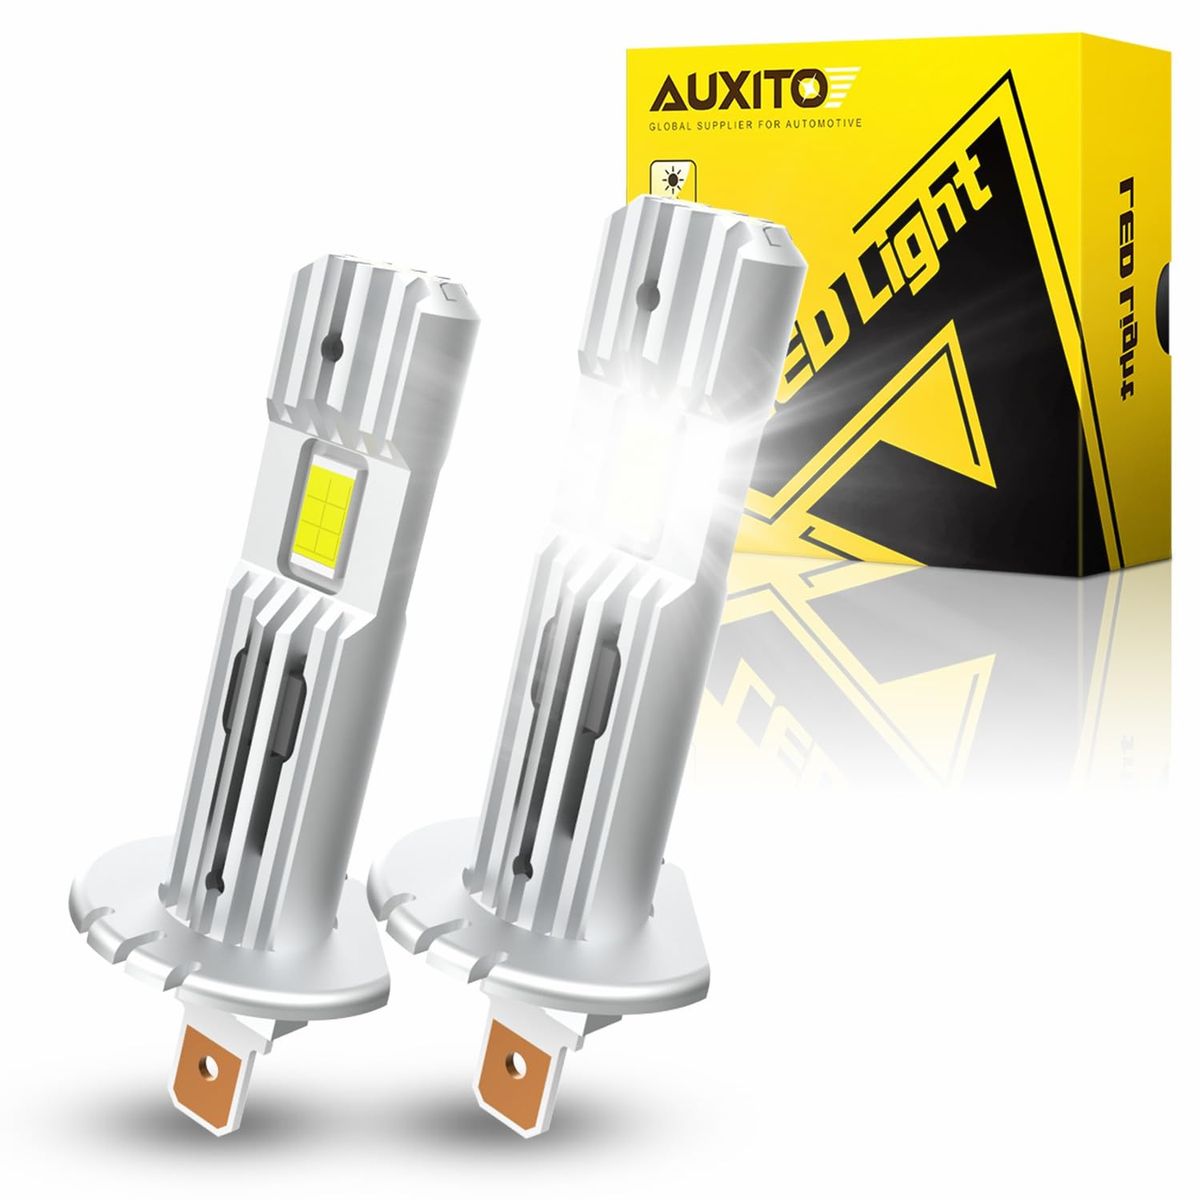 商品情報商品の説明説明 AUXITO h1 ledヘッドライト主な仕様 【1:1ミニサイズ＆取り付け簡単】AUXITO h1 ledヘッドライトはハロゲンと1：1サイズ。スペースが狭い車種でも問題なく取り付けることができ、ミニサイズで装着が簡単です。また、無極性設計により、正極と負極の区別なく接続できるし、 一体型の設計で複雑な配線やコントローラー一切なし、別途のアダプターでも不要、コネクタを差し込むだけ、初心者でも取り付けに戸惑うことはない。br【高輝度&優れた配光性能】h1 led バルブは両面高輝度LEDチップを搭載し、ハロゲンより2倍の明るさが実現します。純正ハロゲンと同位置での発光を実現していますので、h1はバルブでの光軸調整は不要です。6500K のホワイトは路面や側道の障害物を見やすくし、広く明るい視野で夜間運転の安全をサポート。h1バルブはハロゲンの照射原理を全く参考して、配光自体は非常にクッキリとした綺麗なカットラインが出ており対向車等周りにも迷惑な眩しさが無くて、完全に純正ハロゲンを再現することに成功しました。夜間の走行が非常に楽になり、安全な運転の視界をお届けします。br【優れた放熱設計&長寿命】h1 ledライトの本体は高熱伝導性6063航空アルミニウム合金素材の採用します。多重放熱構造のため、最大限度放熱面積を増やして、密閉空間の急速冷却が可能です。同時に、バルブ本体に定電流保護回路を内蔵し、電球の寿命を延ばすことができます。50000時間以上の長寿命実現します！独特のファンレス設計、騒音などは一切ありません。ファンの回転による騒音の悩みから完全に抜け出します。br【キャンセラー内蔵】 H1 LED ヘッドライトはキャンセラーが内蔵されているため、ラジオへの影響を防ぐことができ、球切れ警告も解消できます。車用H1 LEDは98%の車種対応できます。別途ワーニングキャンセラーを購入する必要はありません。※ご注意：キャンセラー内蔵ですが車種によって抵抗値が異なるため警告灯キャンセルをお約束するものではありません。外来車または一部の国産車でご使用する場合、インジケーターの不点灯や警告灯など誤作動を起こす場合がございます。br【商品スペック＆2年保証】車用H1 LED ヘッドライト / 型番：H1 / 色温度：6500Kホワイト / 極性 : 無極性 / ワット数（片方）：約15W / 電圧：DC9V-18V／ 使用寿命：50000時間以上 ／ 防水等級：IP67 / 保証時間：2年 お買い上げ日より2年間の保証サービスを提供いたします。2年間の使用期間中にH1ヘッドライトが不良になる場合、またはご利用の際何かご不明な点がございましたら、ご遠慮なく「店名」-「質問する」の手順でクリックしてお問い合わせください。24時間以内返答で、新品交換や返金などの解決策がご提供いただきます。